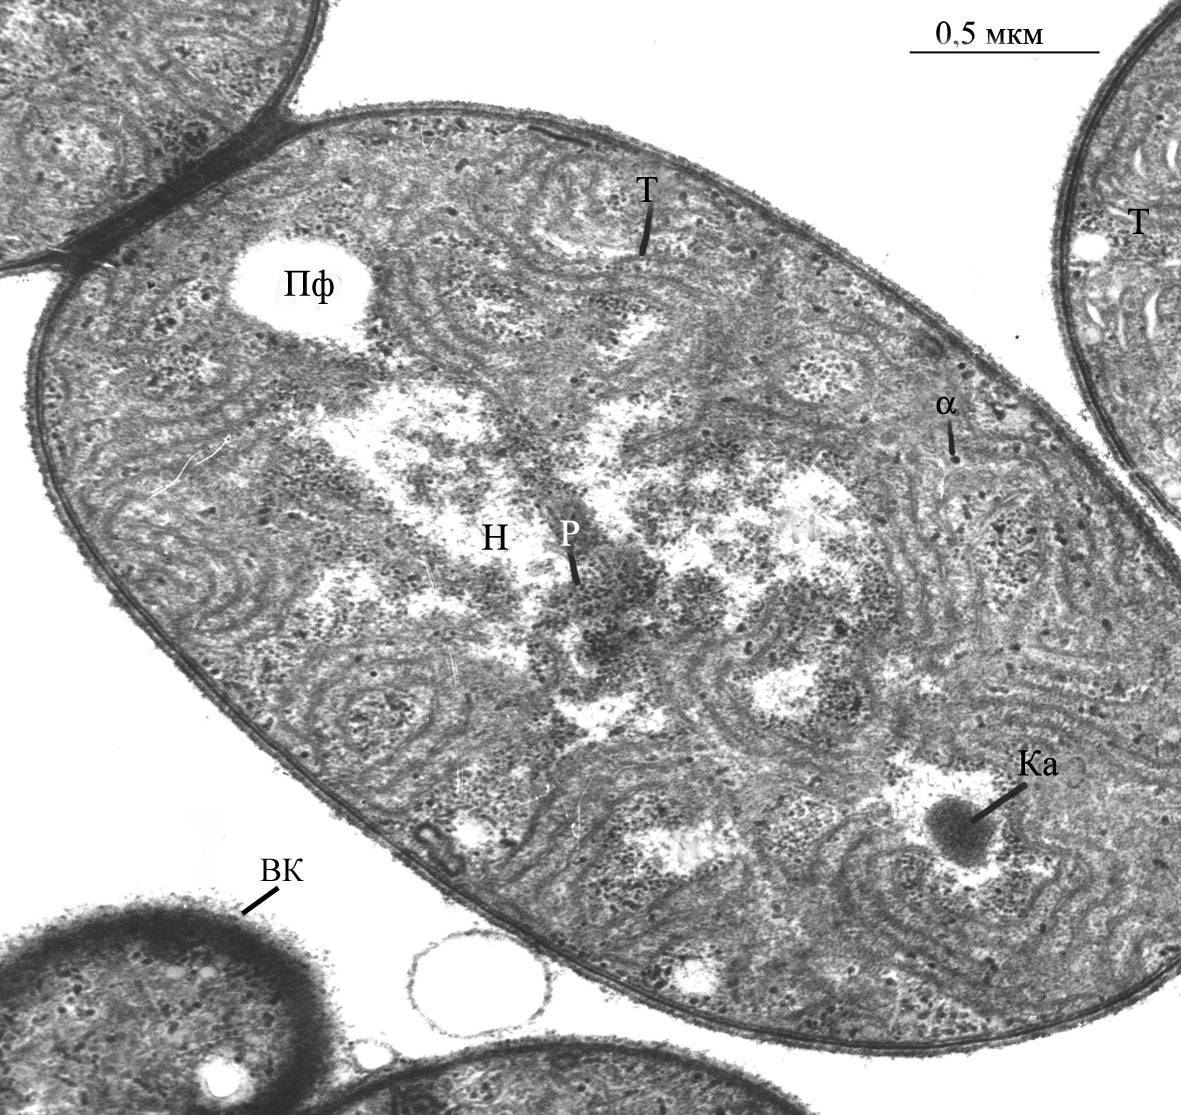  Фрагмент клетки  цианобактерии  нм - наружная мембрана, цпм - цитоплазматическая мембрана, КС -  клеточная стенка, Пг - пептидогликан,  (трансмиссионная элеткронная микроскопия, фото Баулиной О.И.). , (United States)